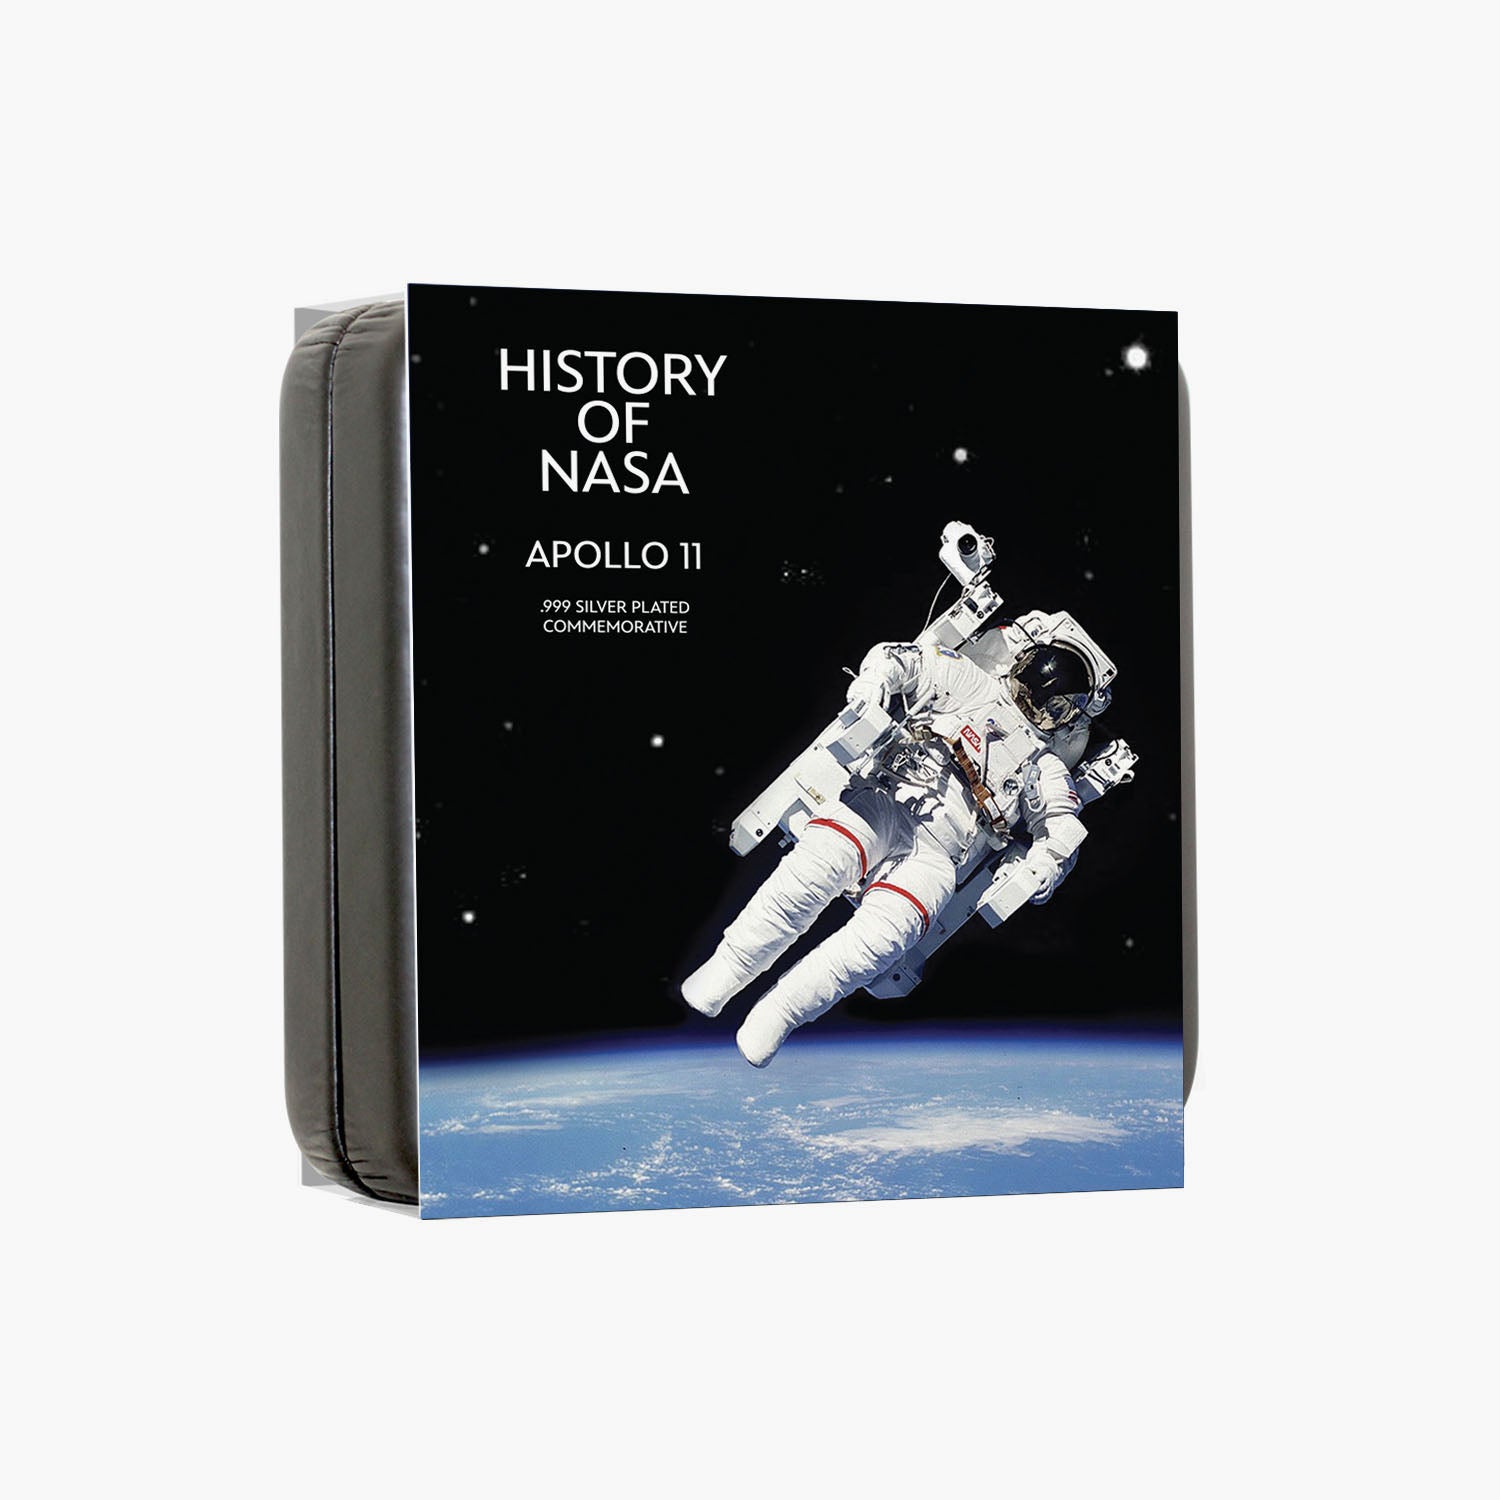 Pièce plaquée argent NASA 2023 Apollo 11 de 50 mm